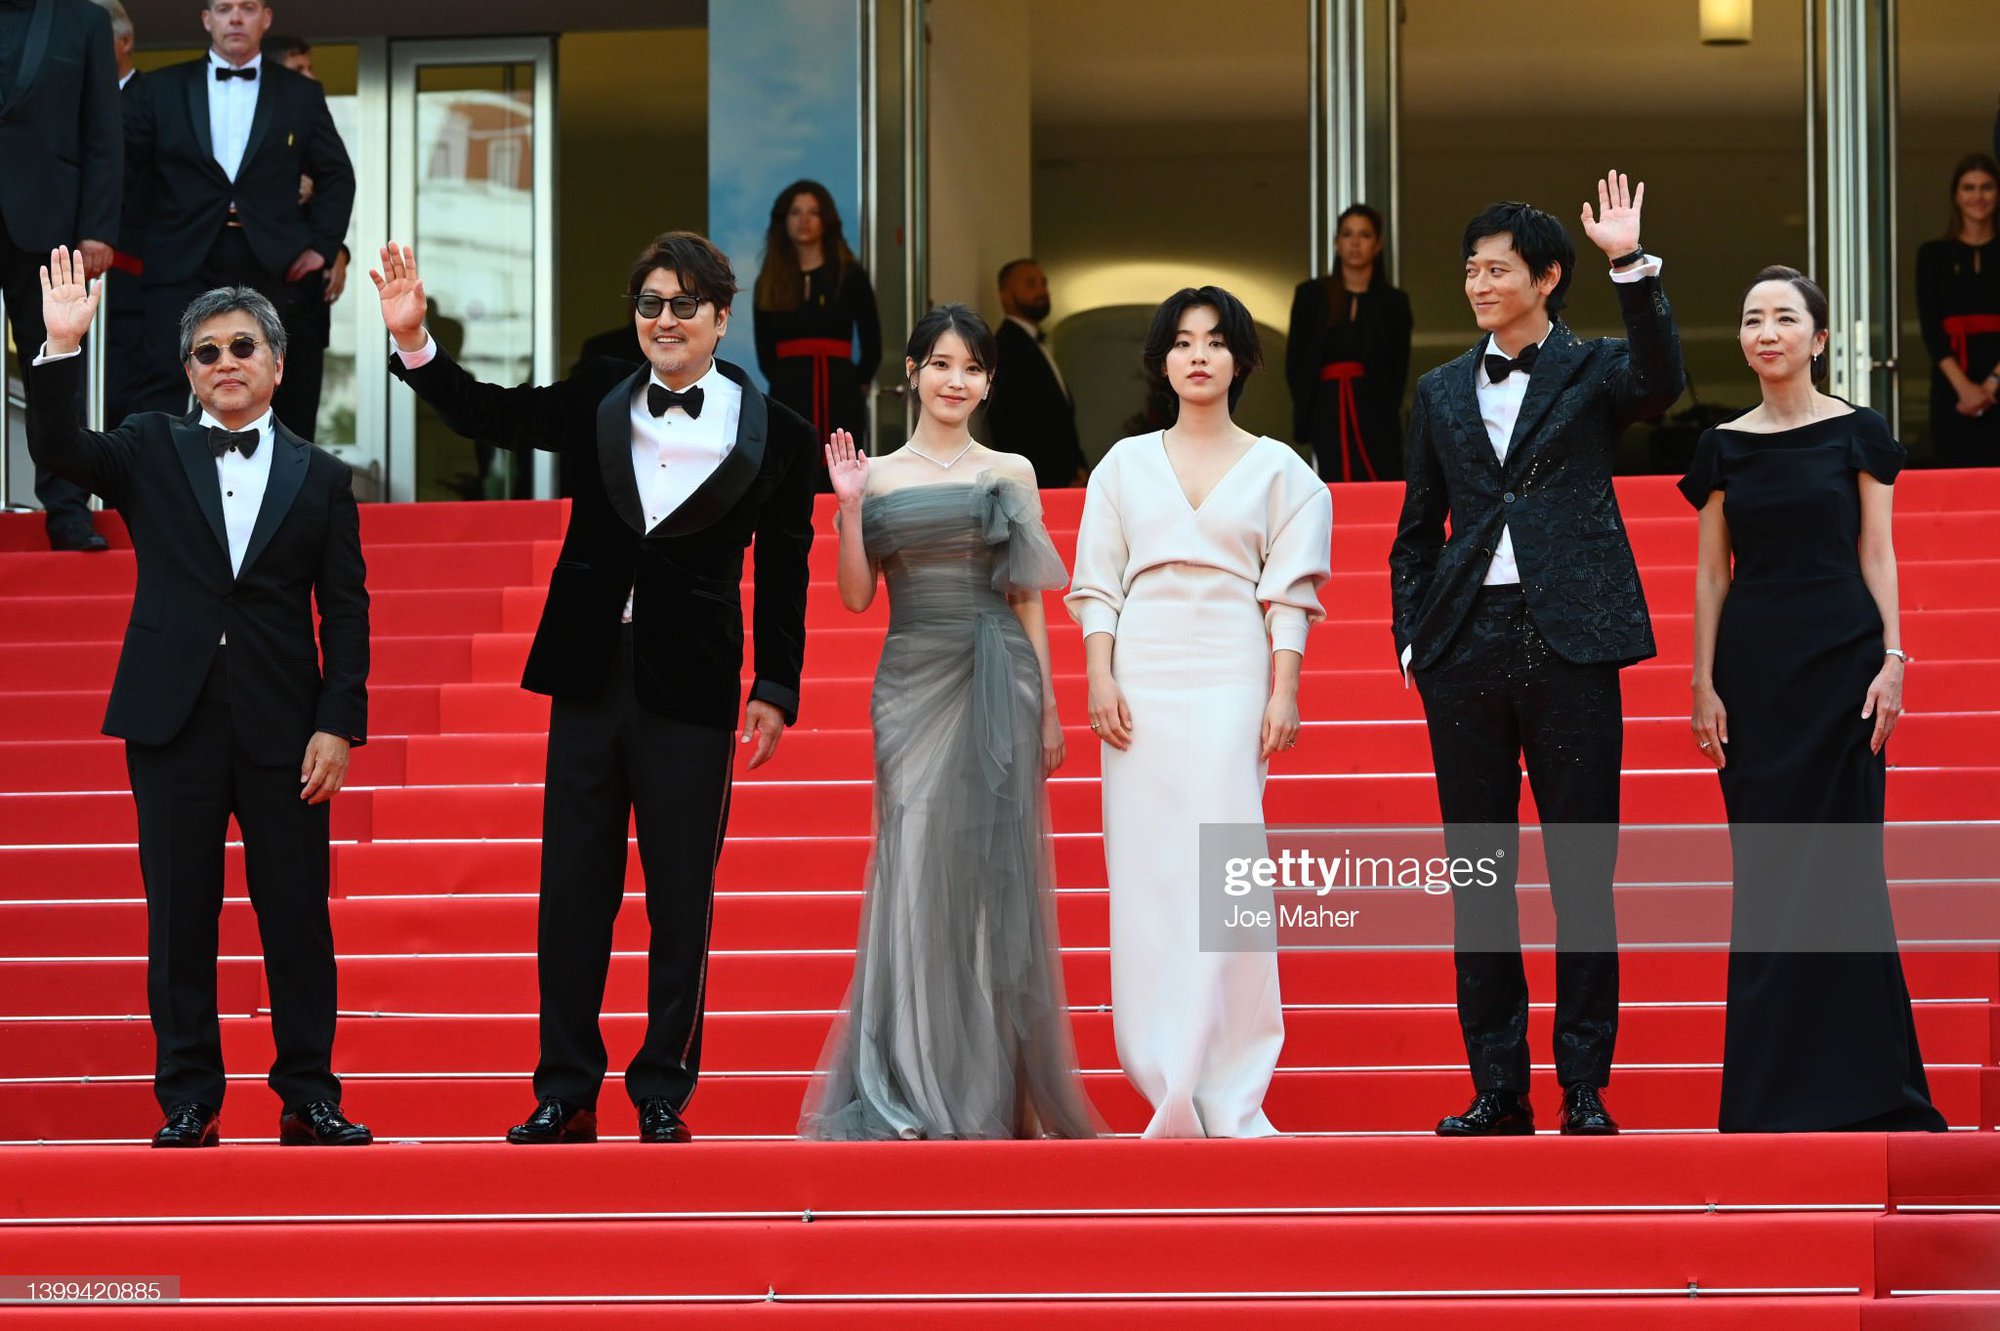 Dàn sao Hàn hạng A đổ bộ Cannes 2022: IU đẹp như tiên tử át cả sao Itaewon Class, Kang Dong Won chân dài choáng ngợp - Ảnh 2.